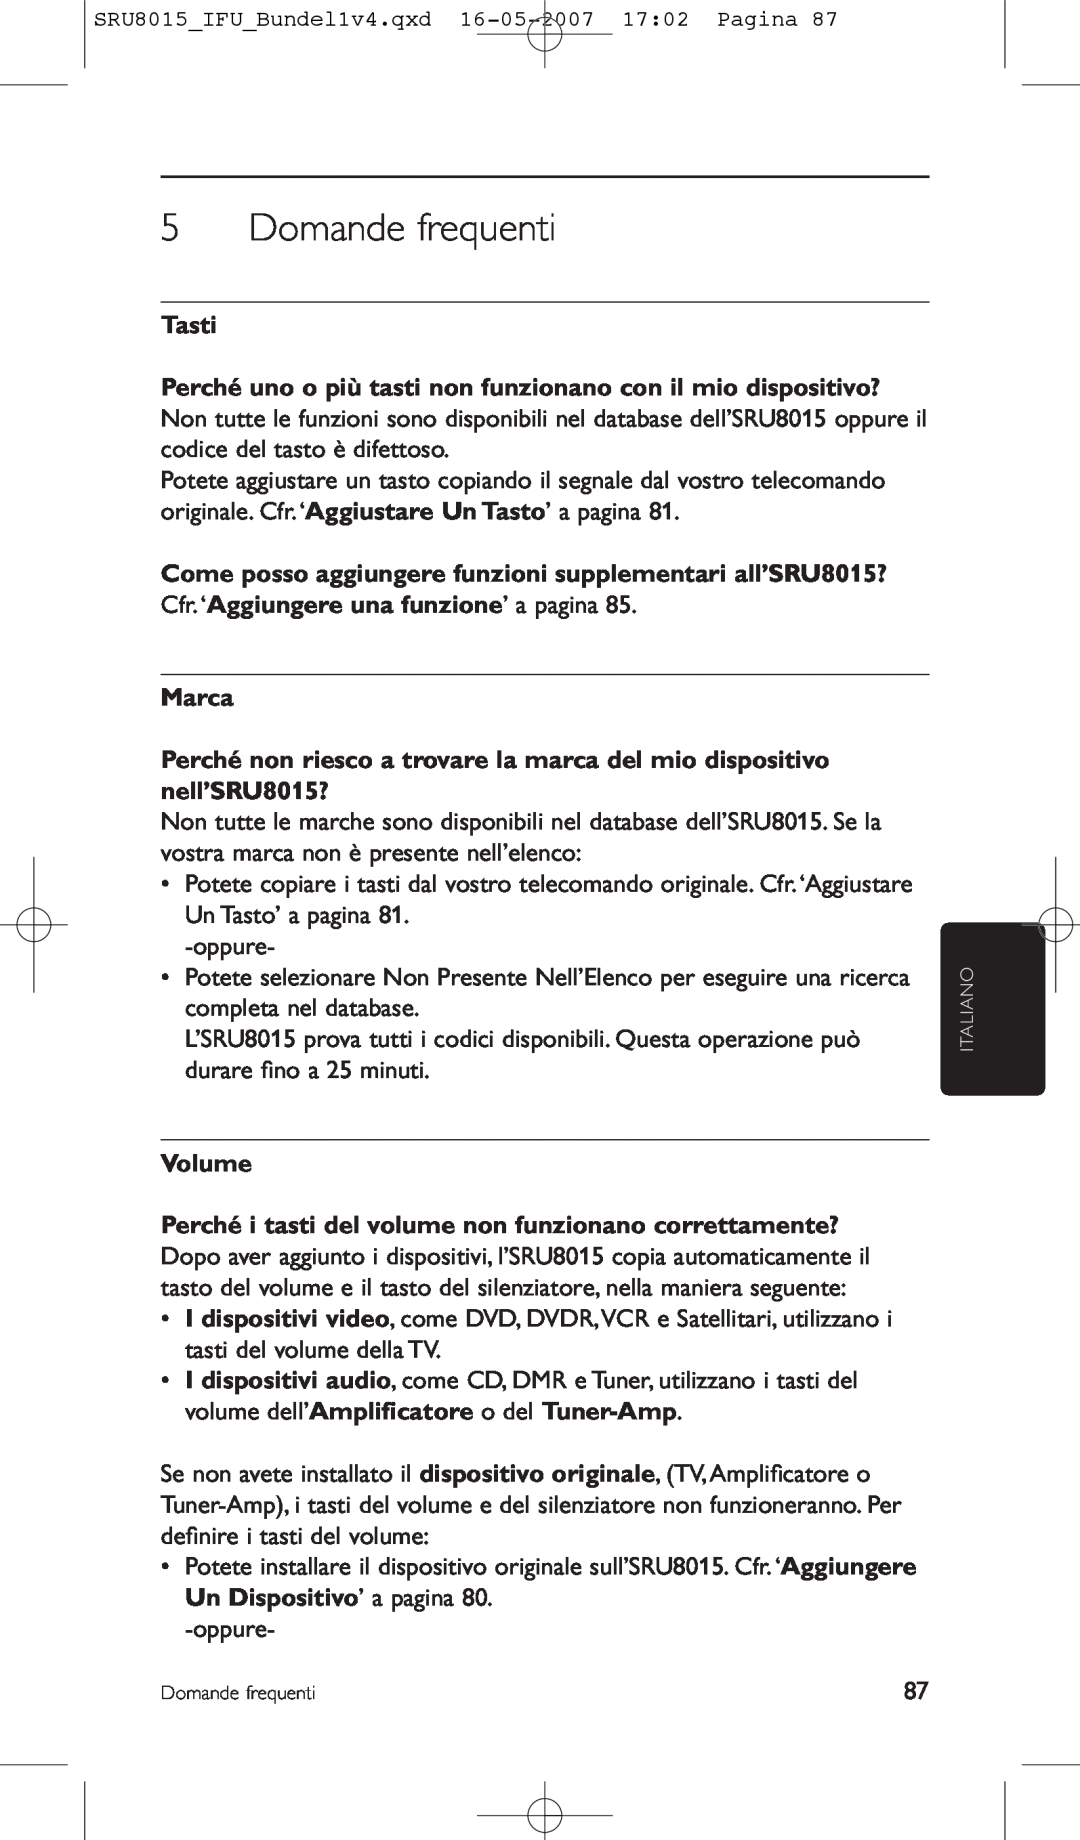 Philips SRU8015 manual Domande frequenti, Tasti Perché uno o più tasti non funzionano con il mio dispositivo?, Marca 